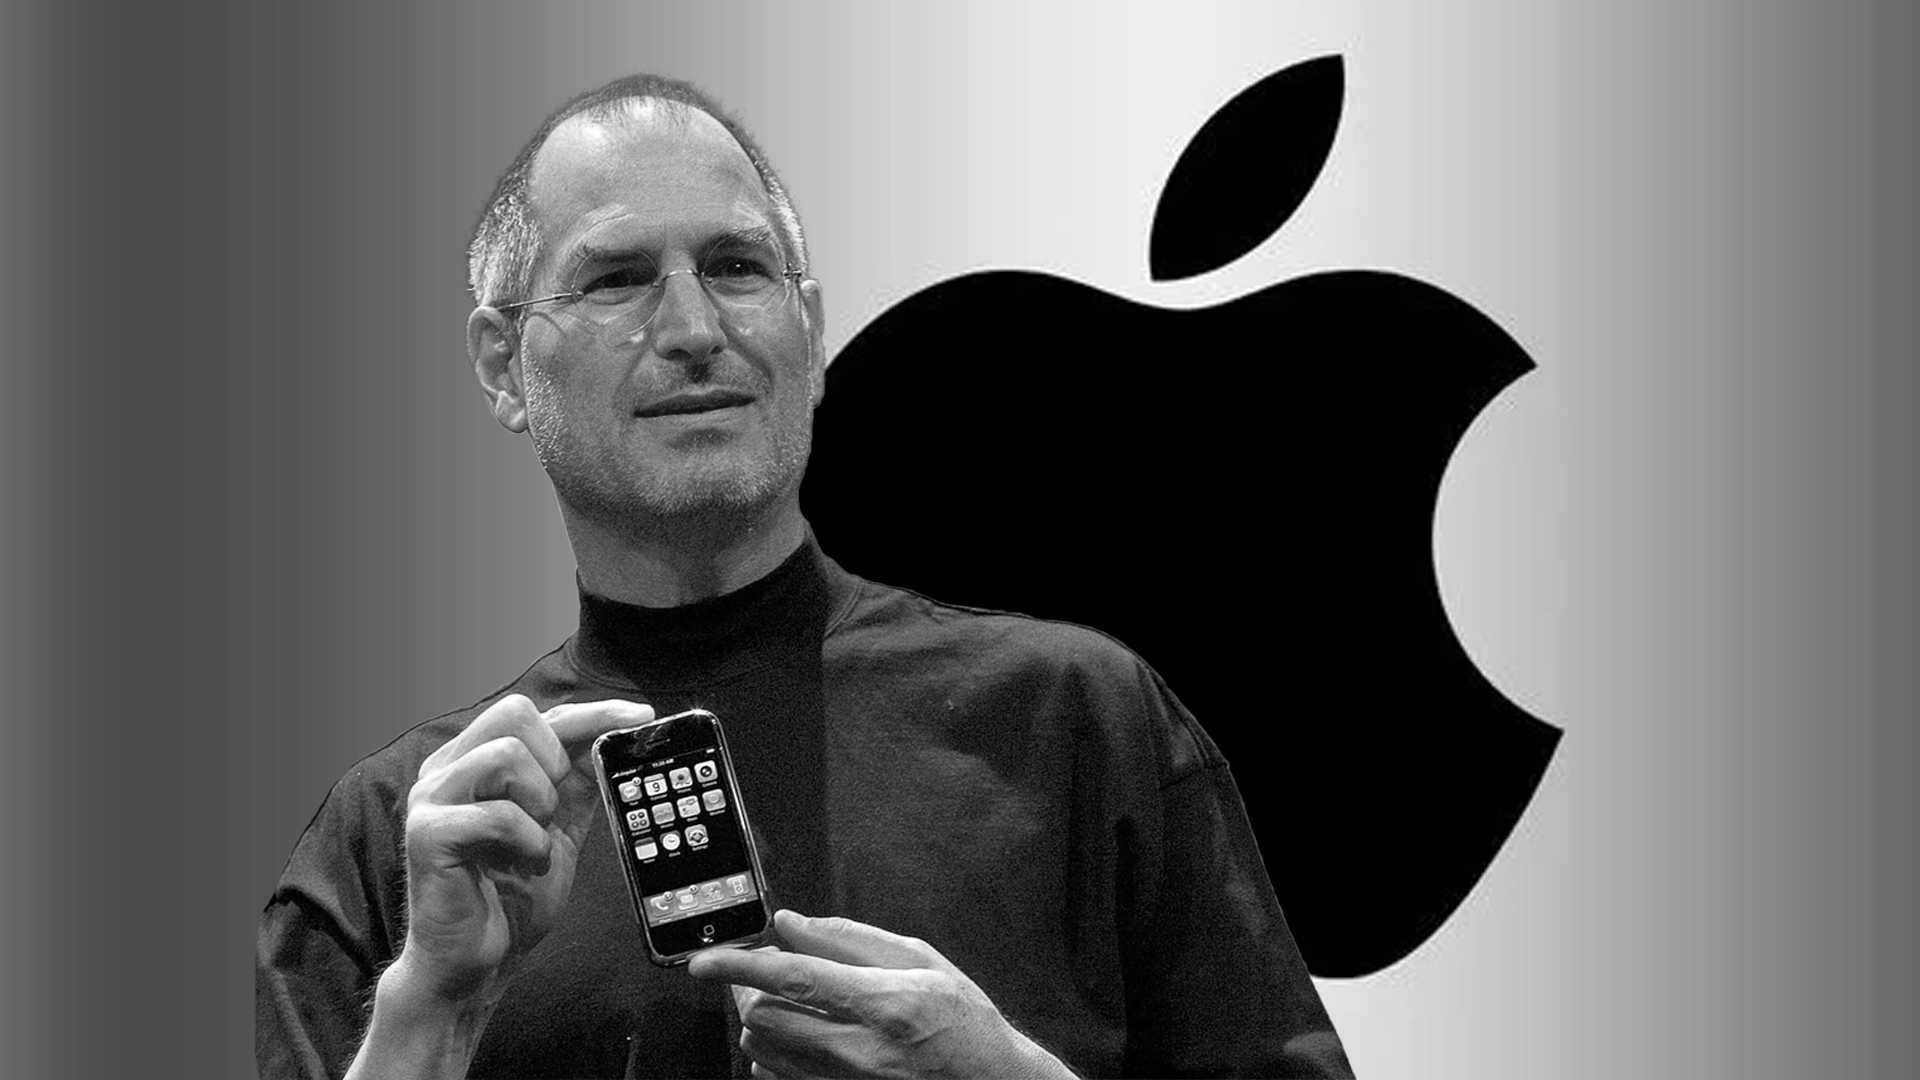 स्टिभ जब्सको सफलताको कथा – कसरी सुरु भयो एप्पल कम्पनी ?